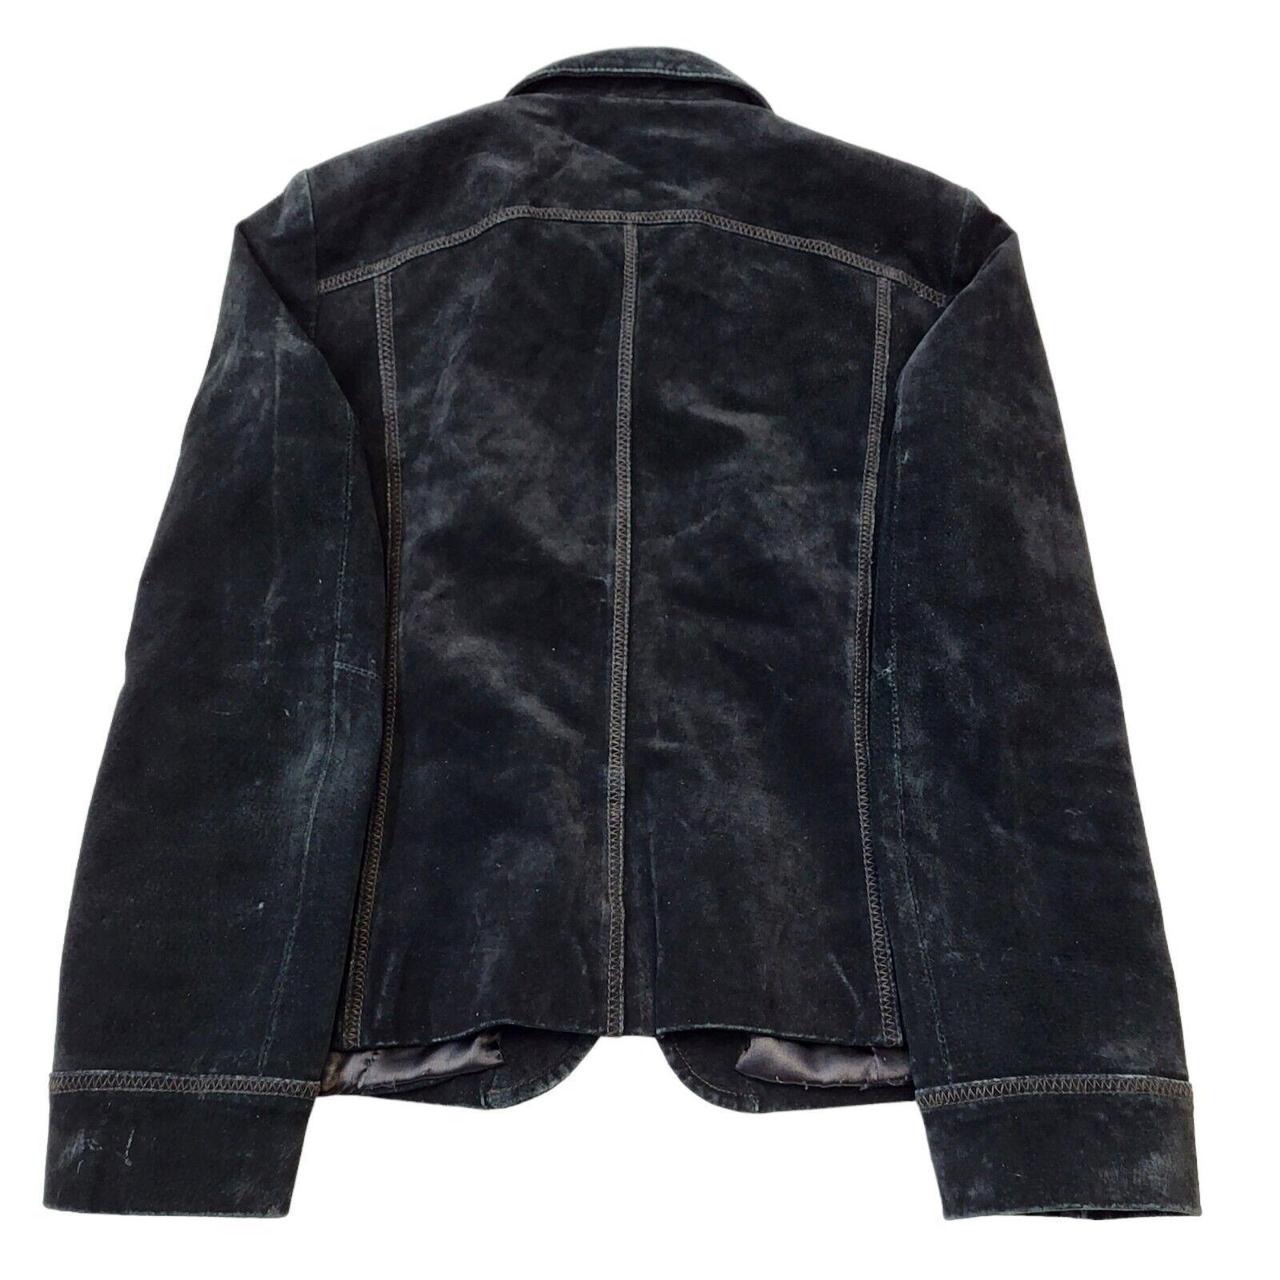 WS Leather jacket